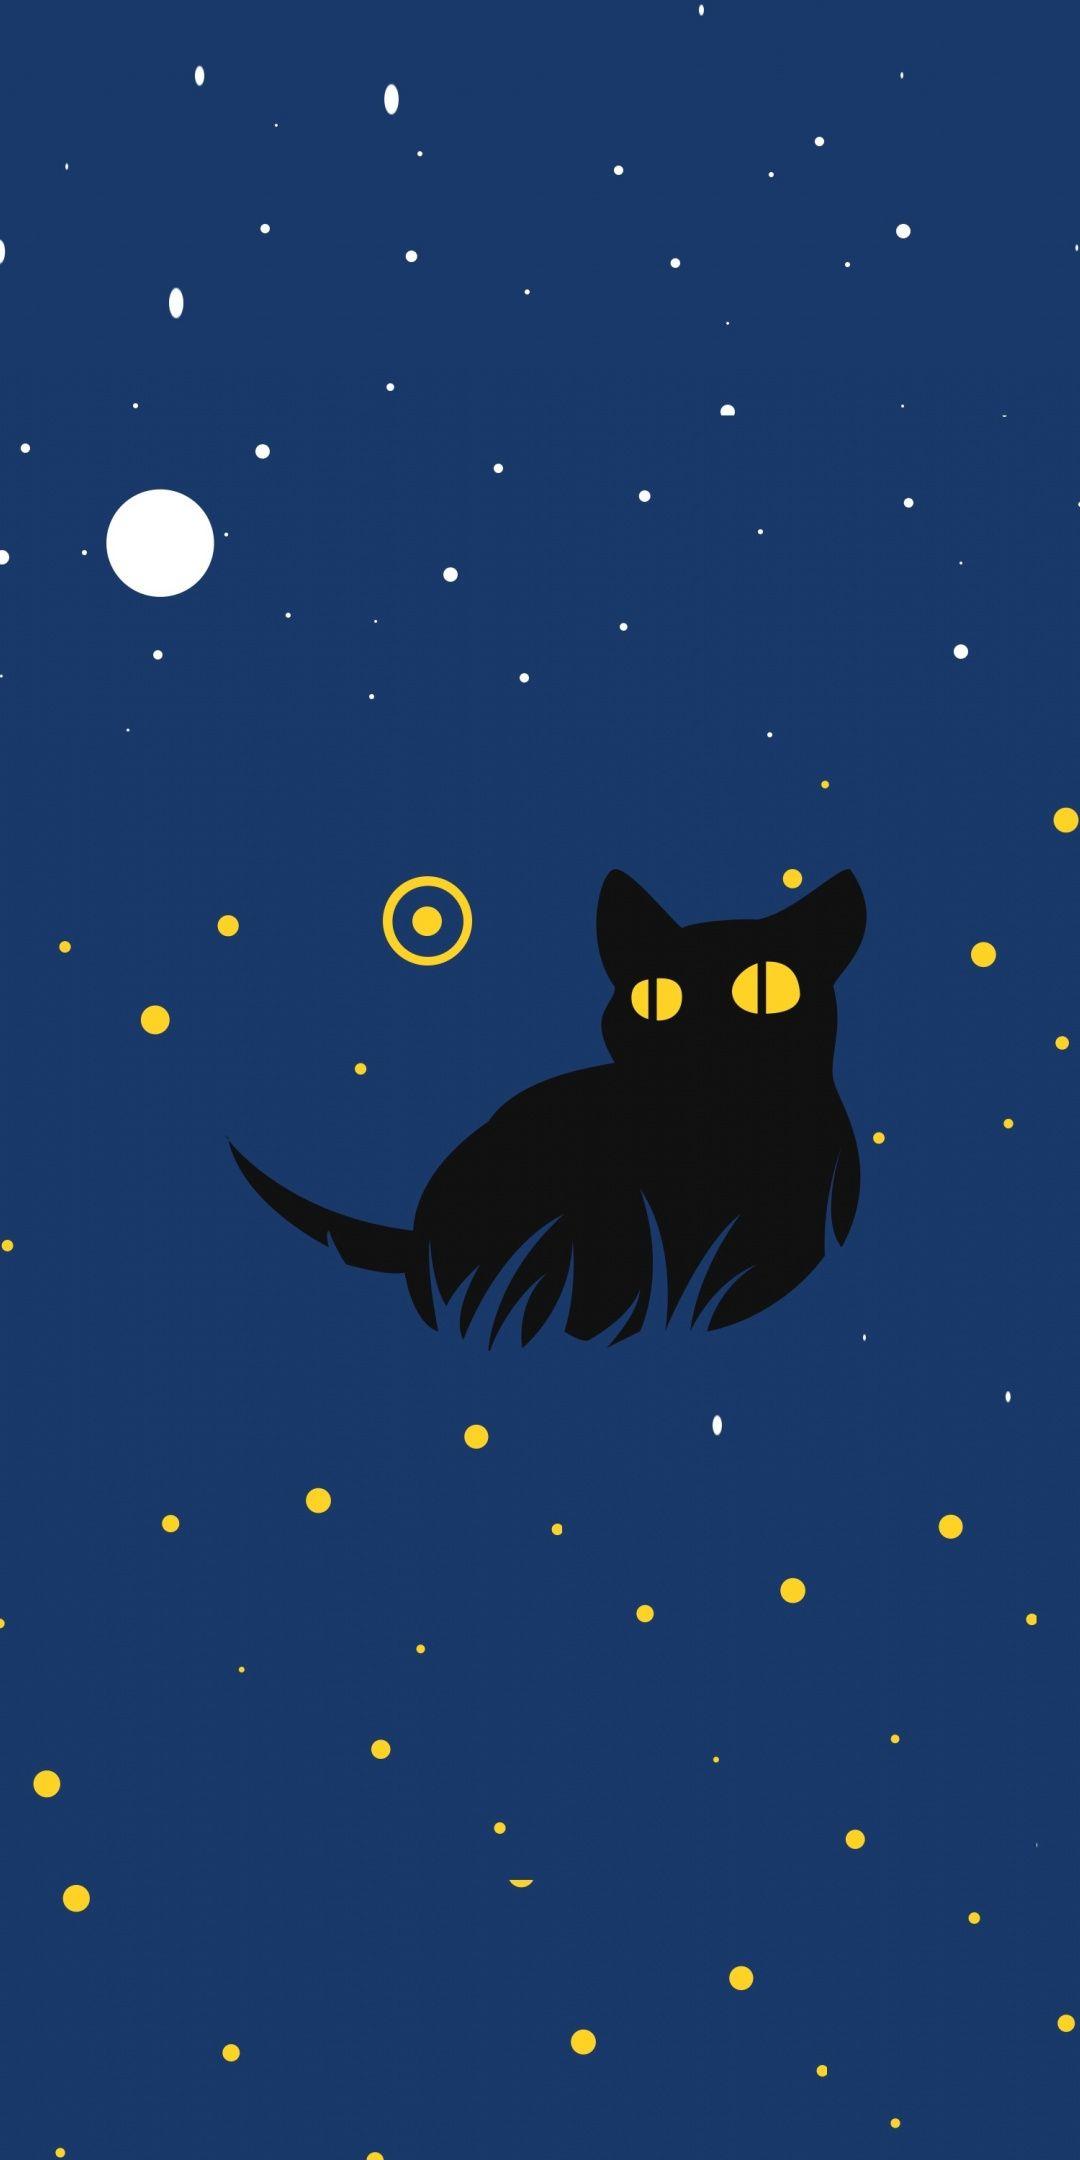 Cute Black Cat Cartoon Wallpapers - Top Free Cute Black Cat Cartoon ...